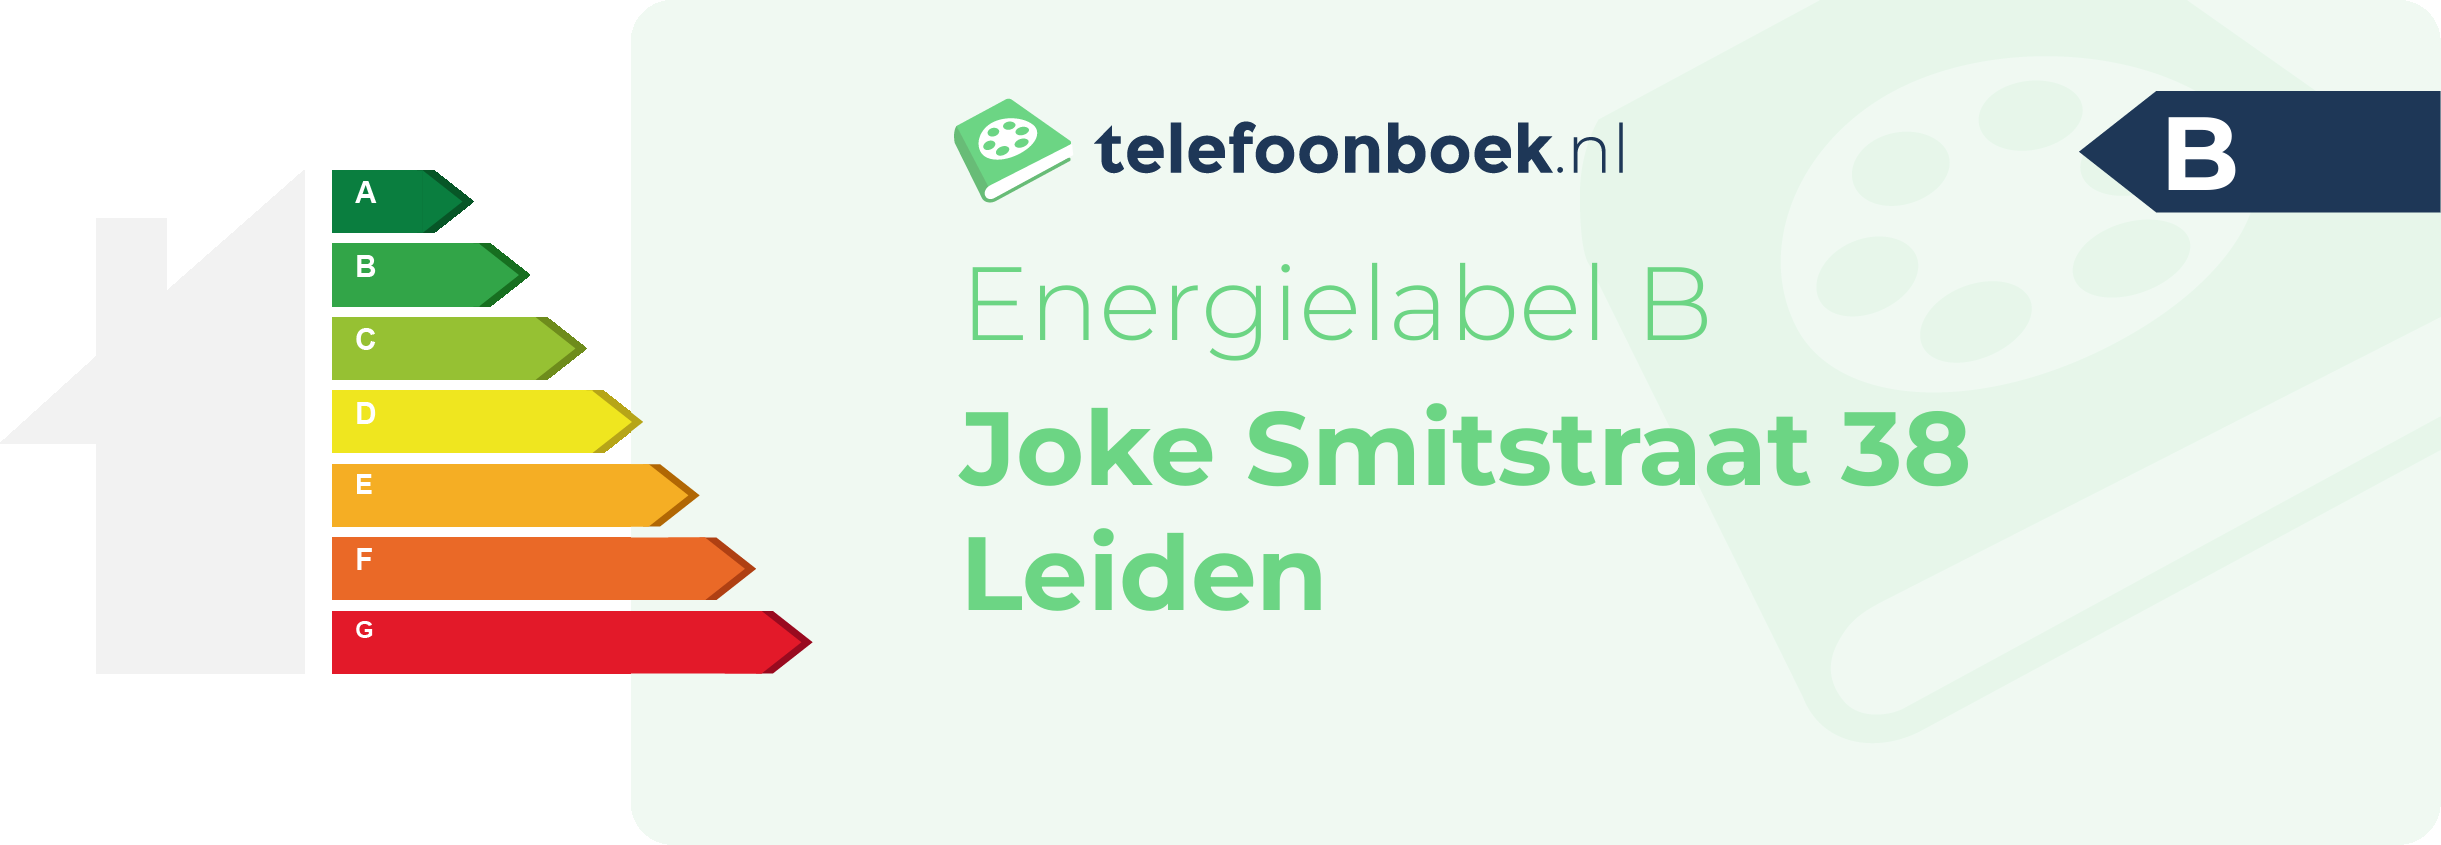 Energielabel Joke Smitstraat 38 Leiden